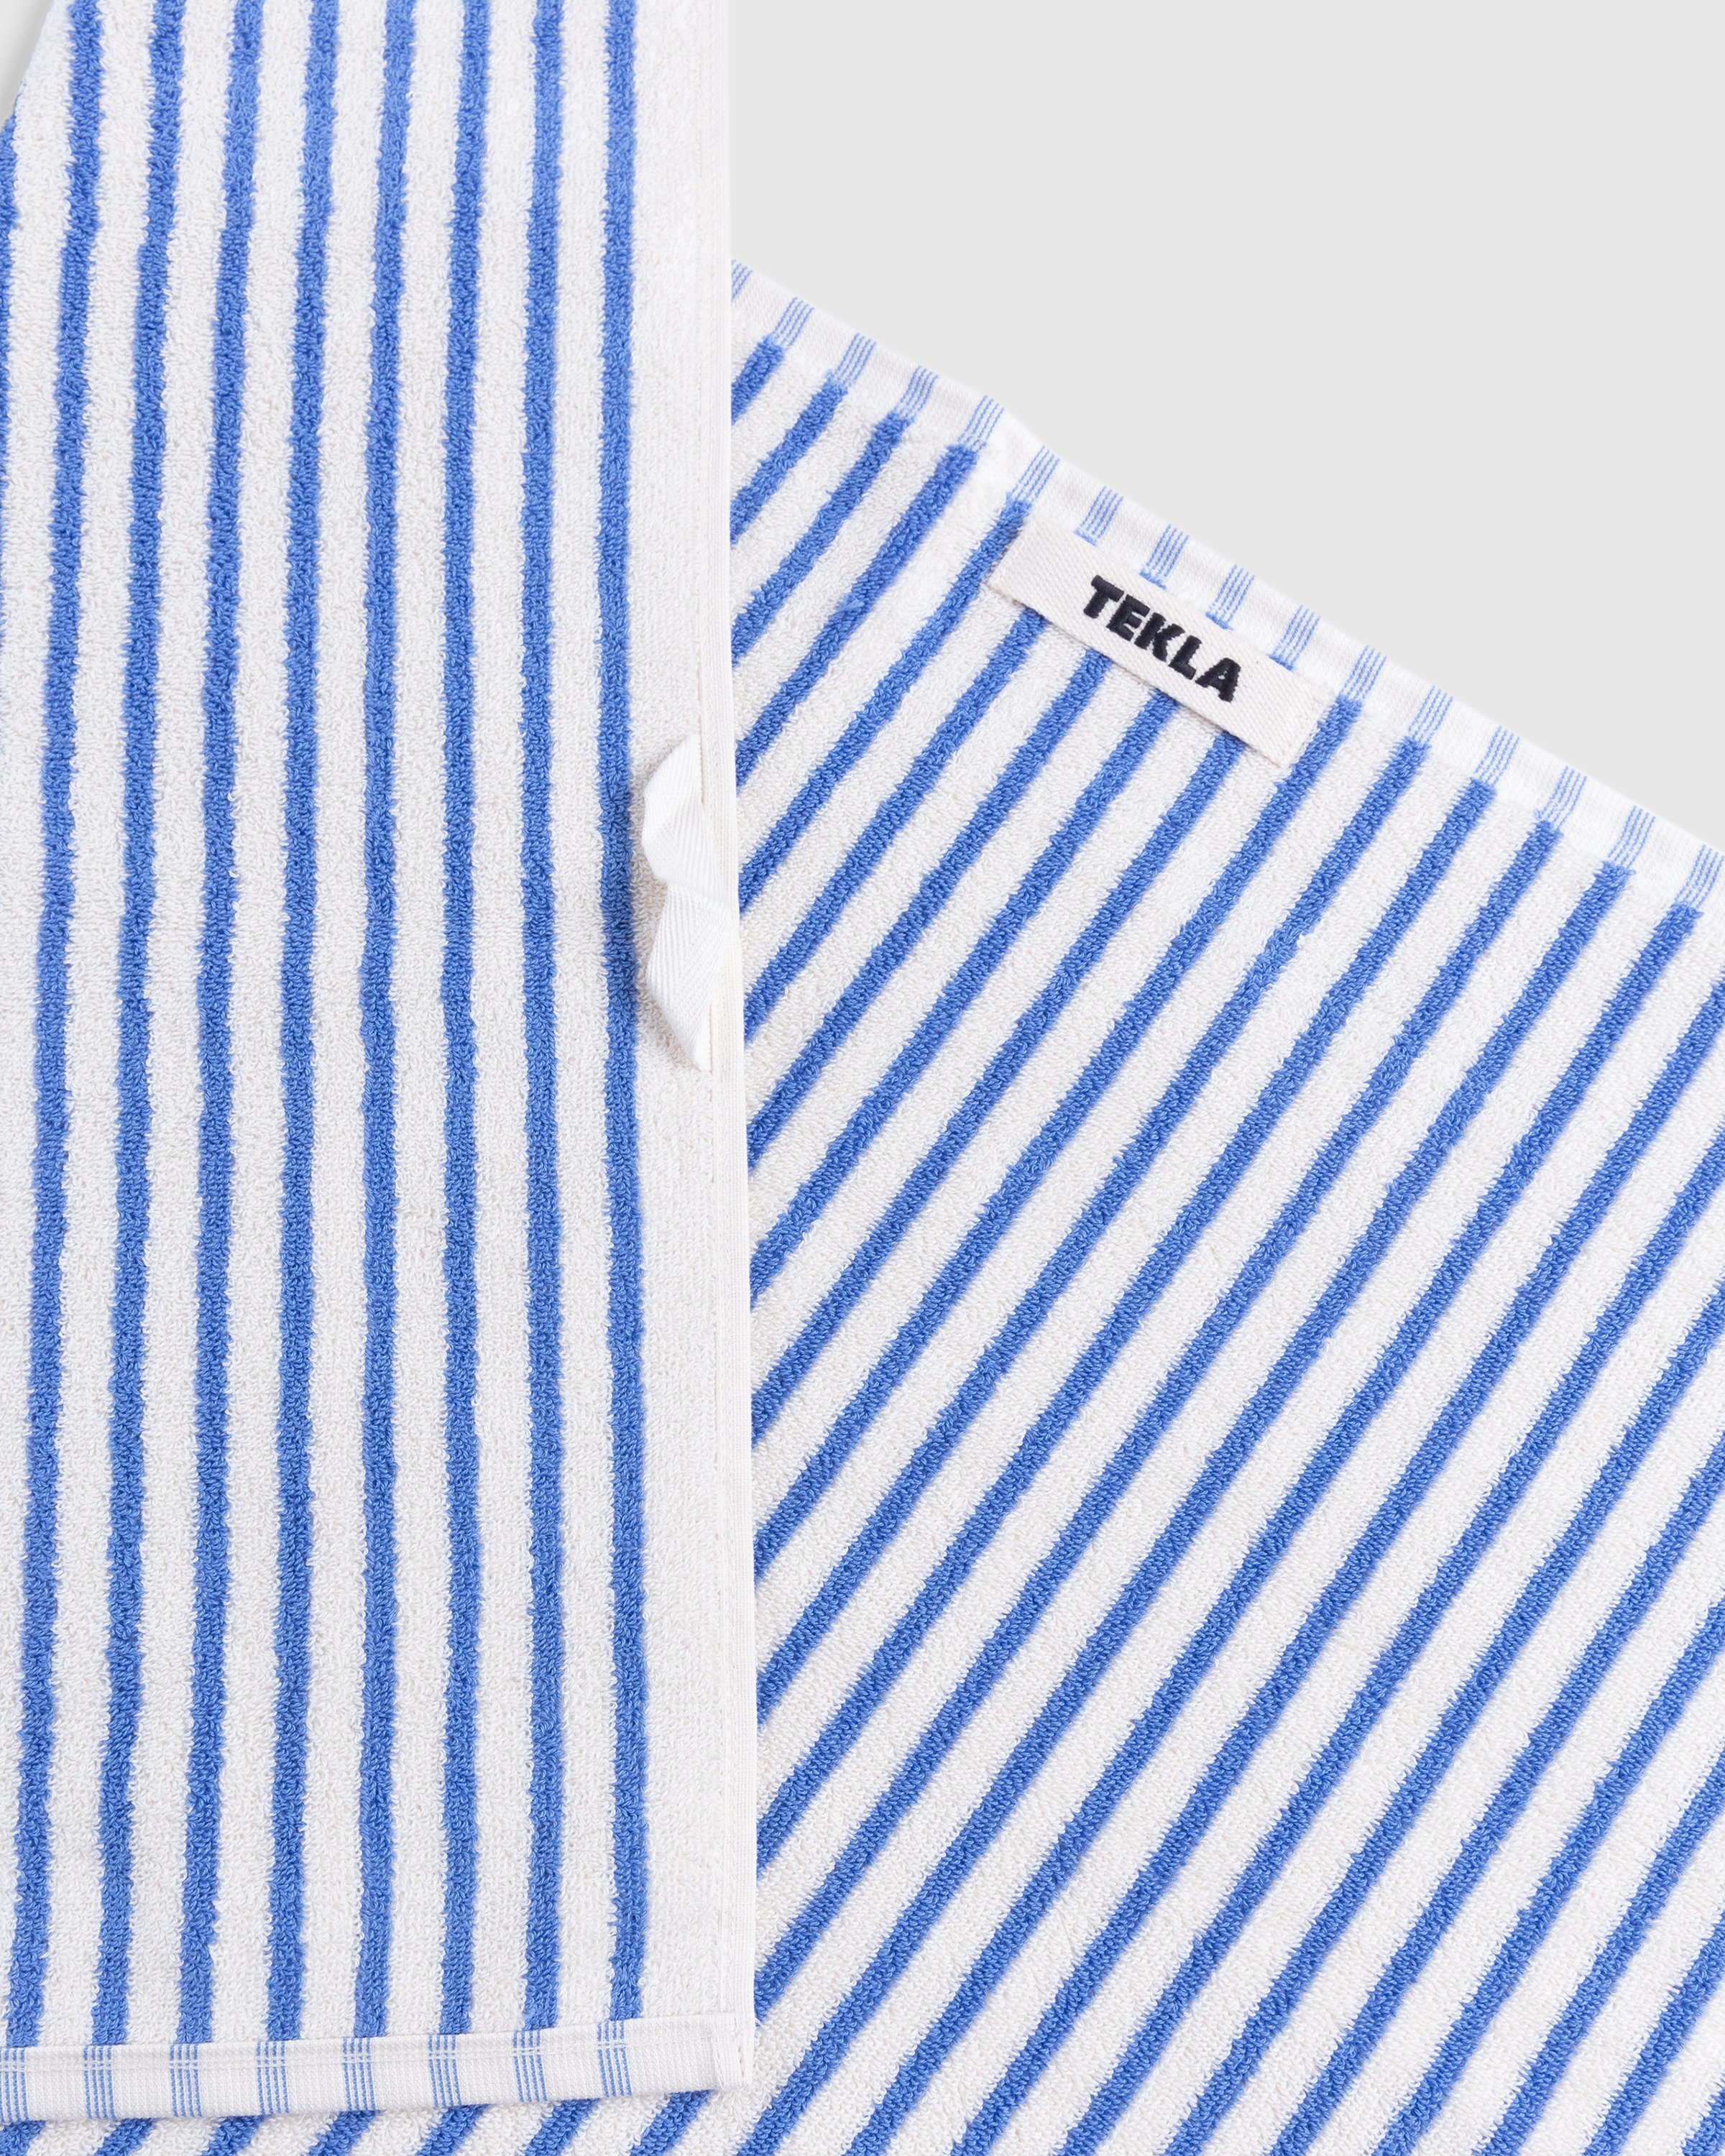 Tekla - Hand Towel Coastal Stripes - Lifestyle - Multi - Image 3